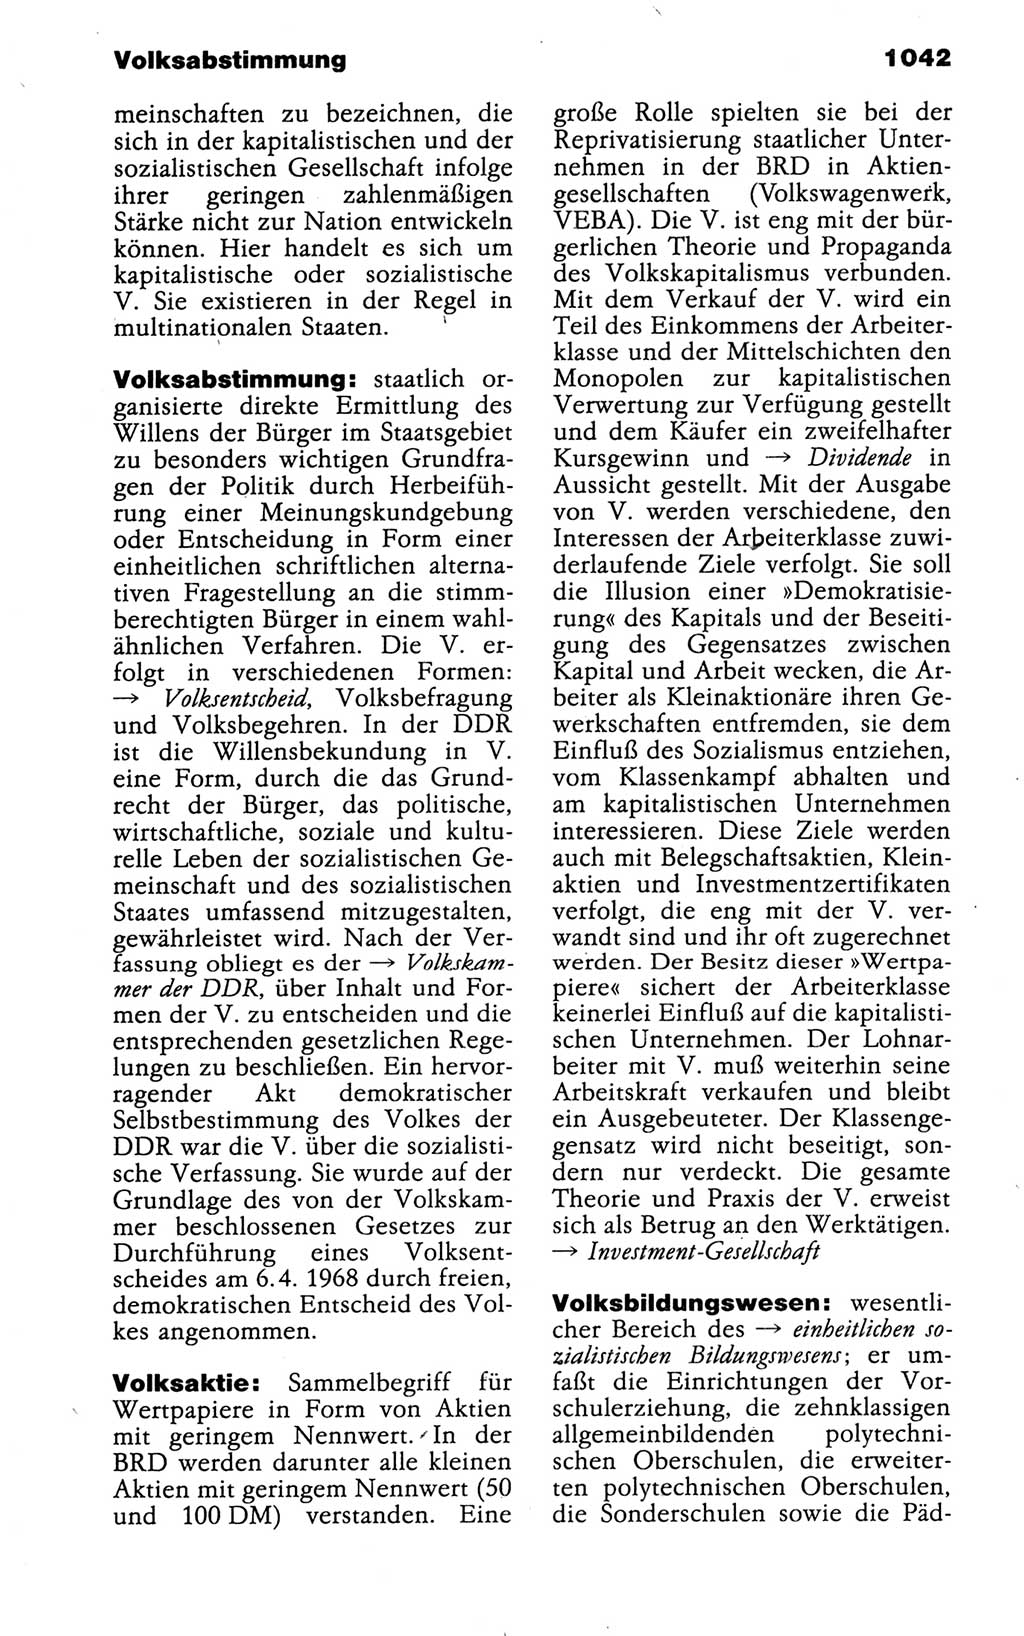 Kleines politisches Wörterbuch [Deutsche Demokratische Republik (DDR)] 1988, Seite 1042 (Kl. pol. Wb. DDR 1988, S. 1042)